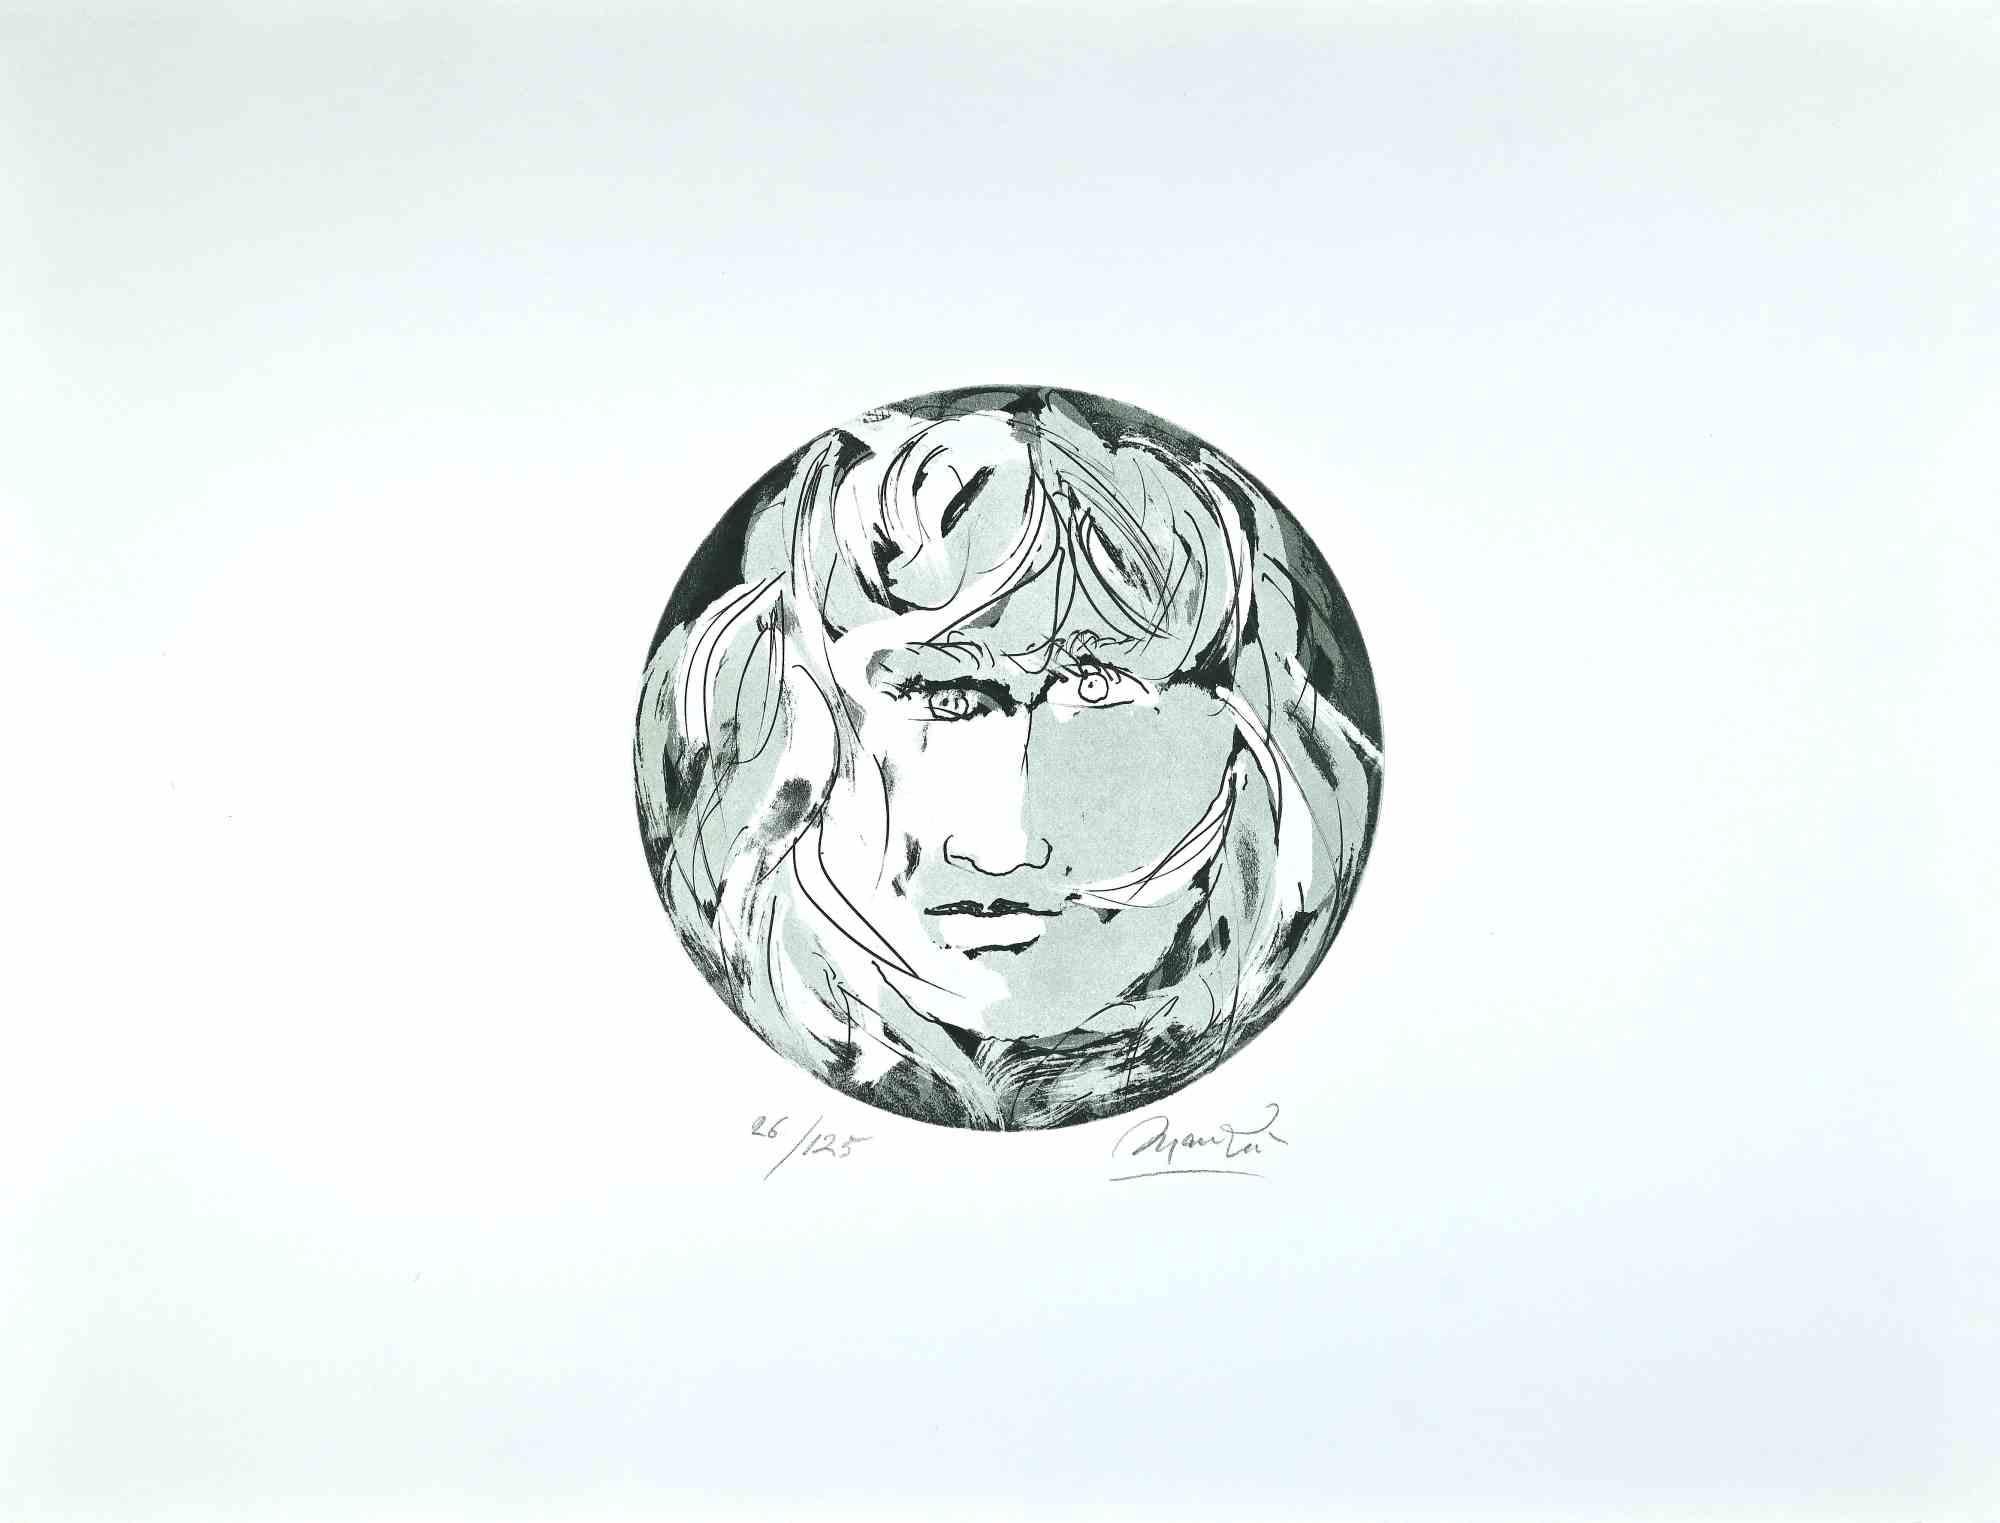 Round Medusa - Etching by Giacomo Manzù - 1970